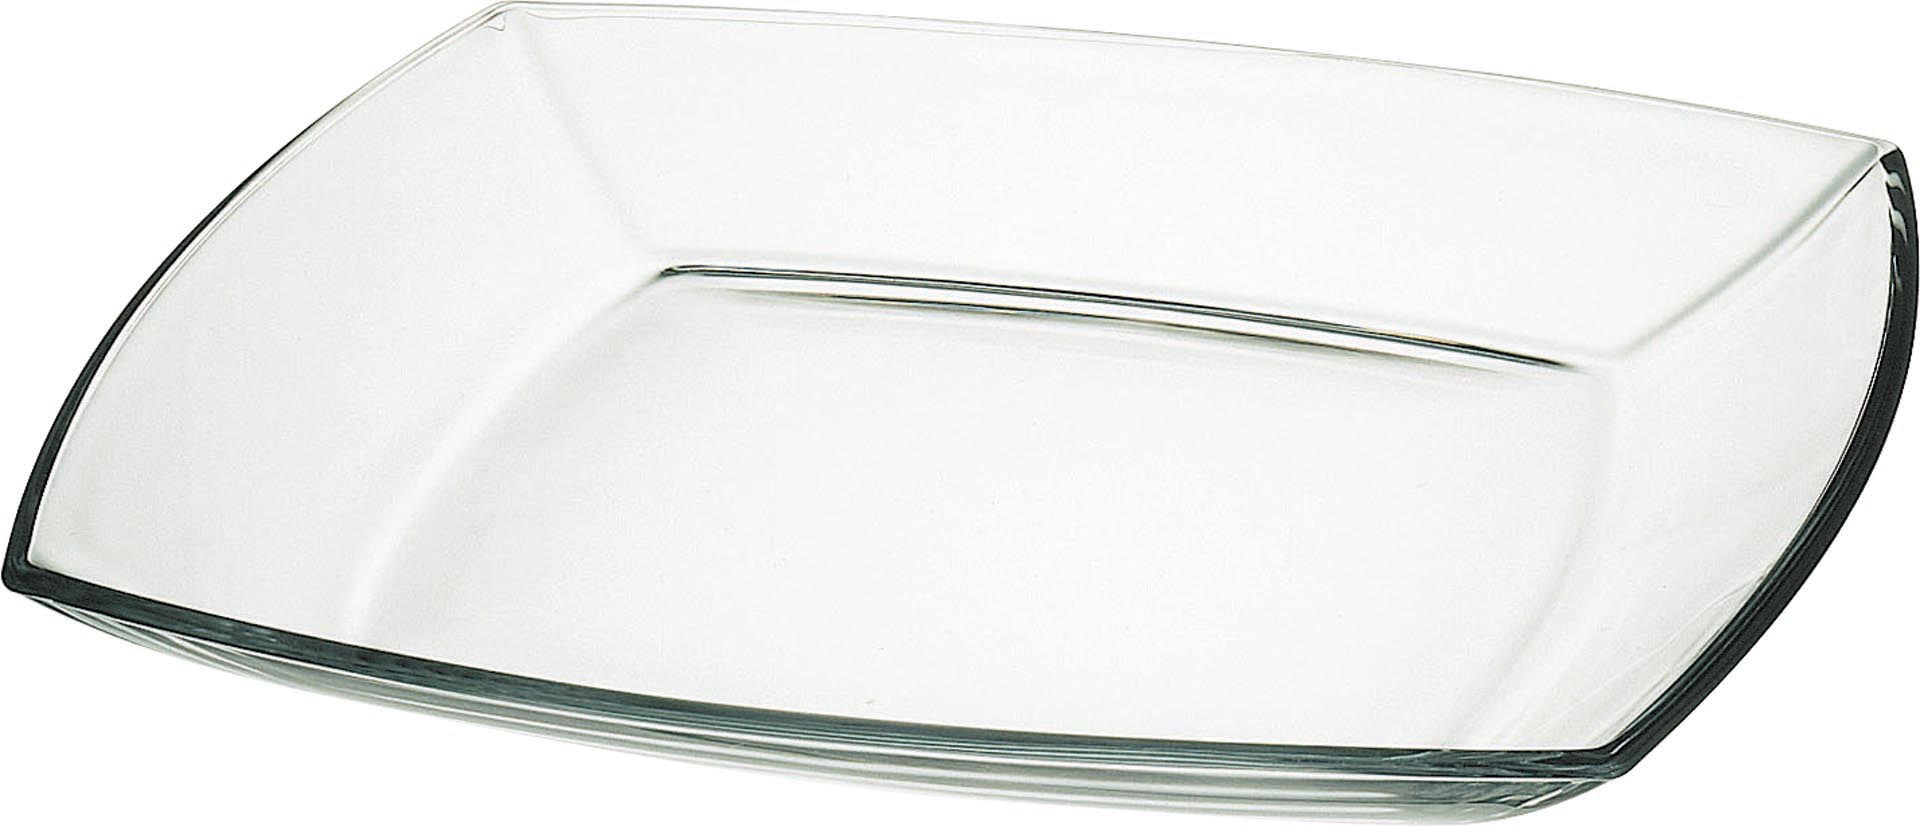 Glasteller eckig 19,5x19,5cm VPE6